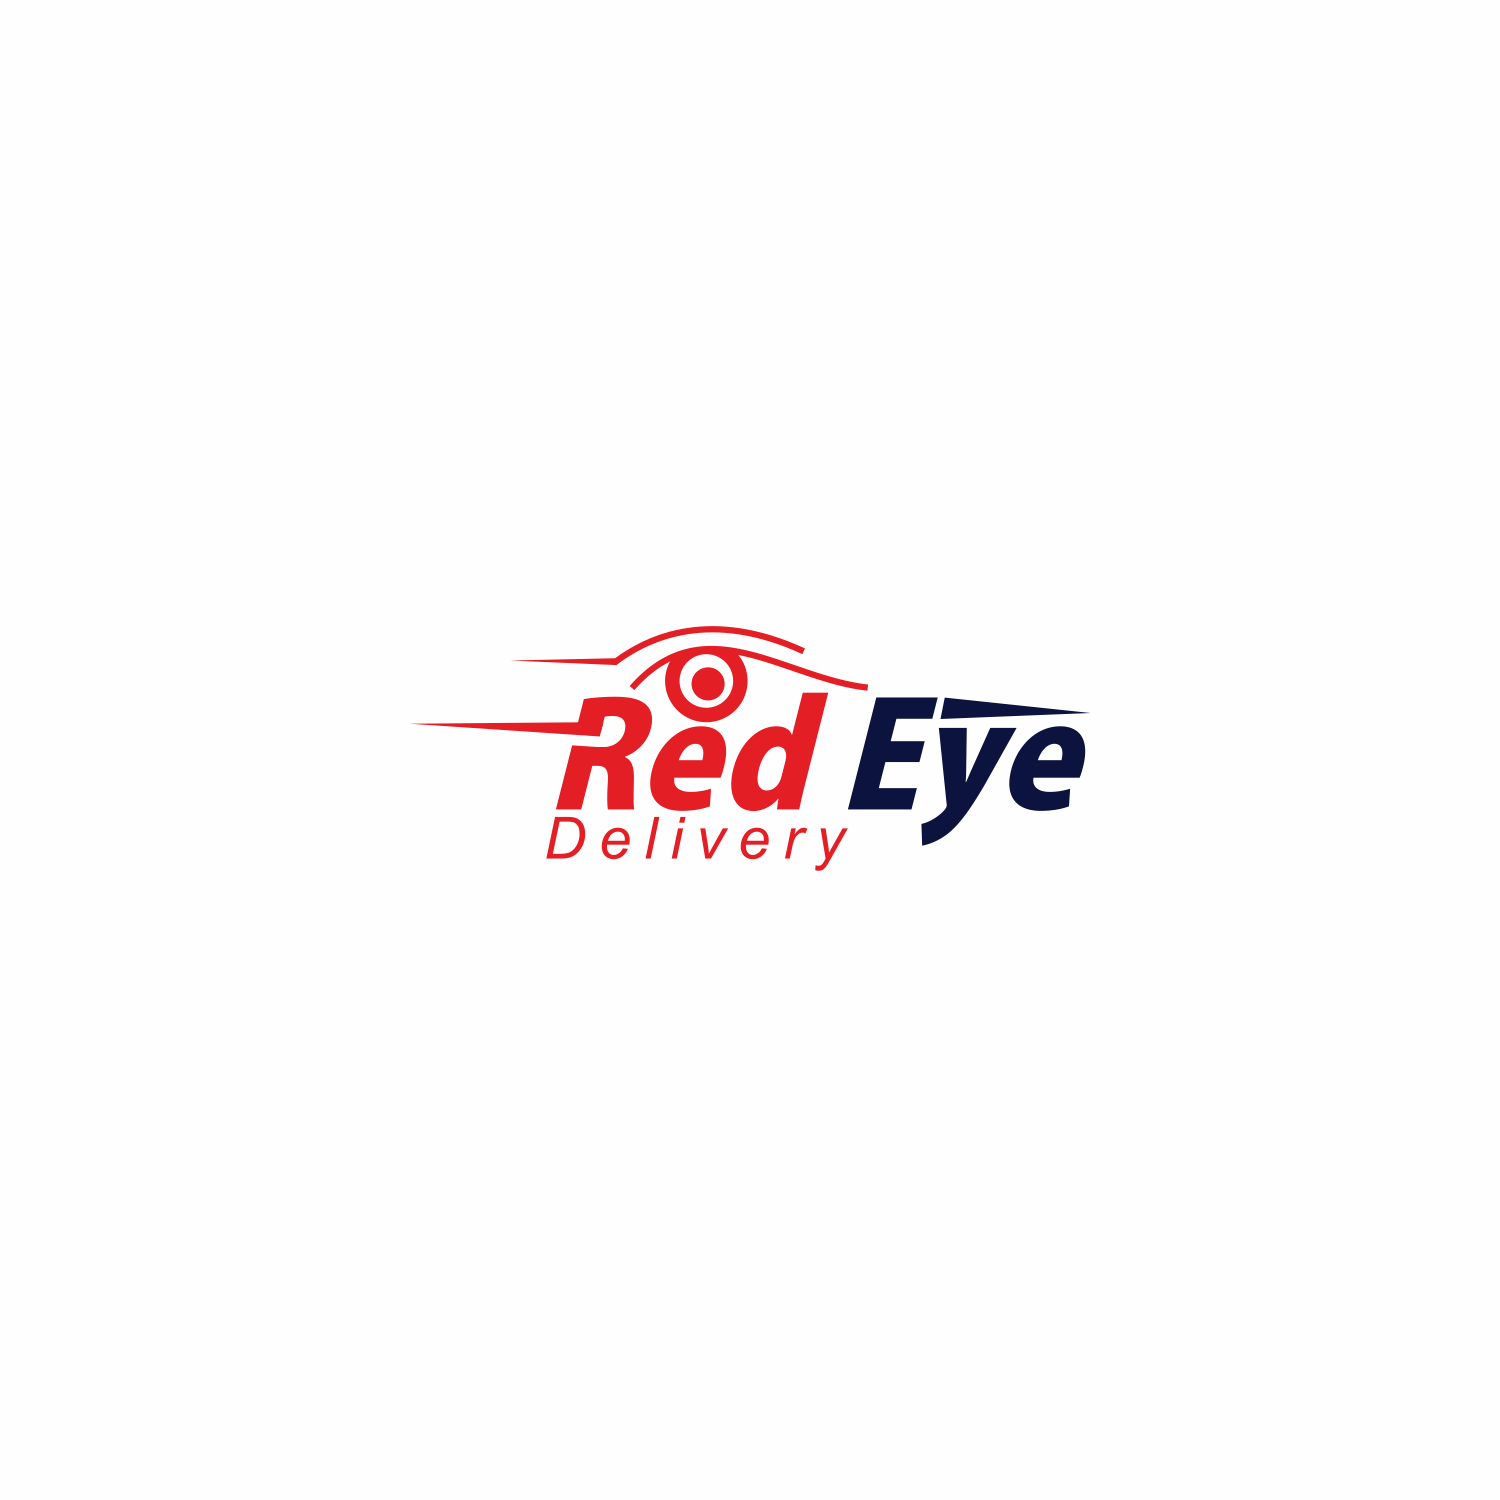 Red Eye Logo - Elegant, Modern, Delivery Service Logo Design for Red Eye Delivery